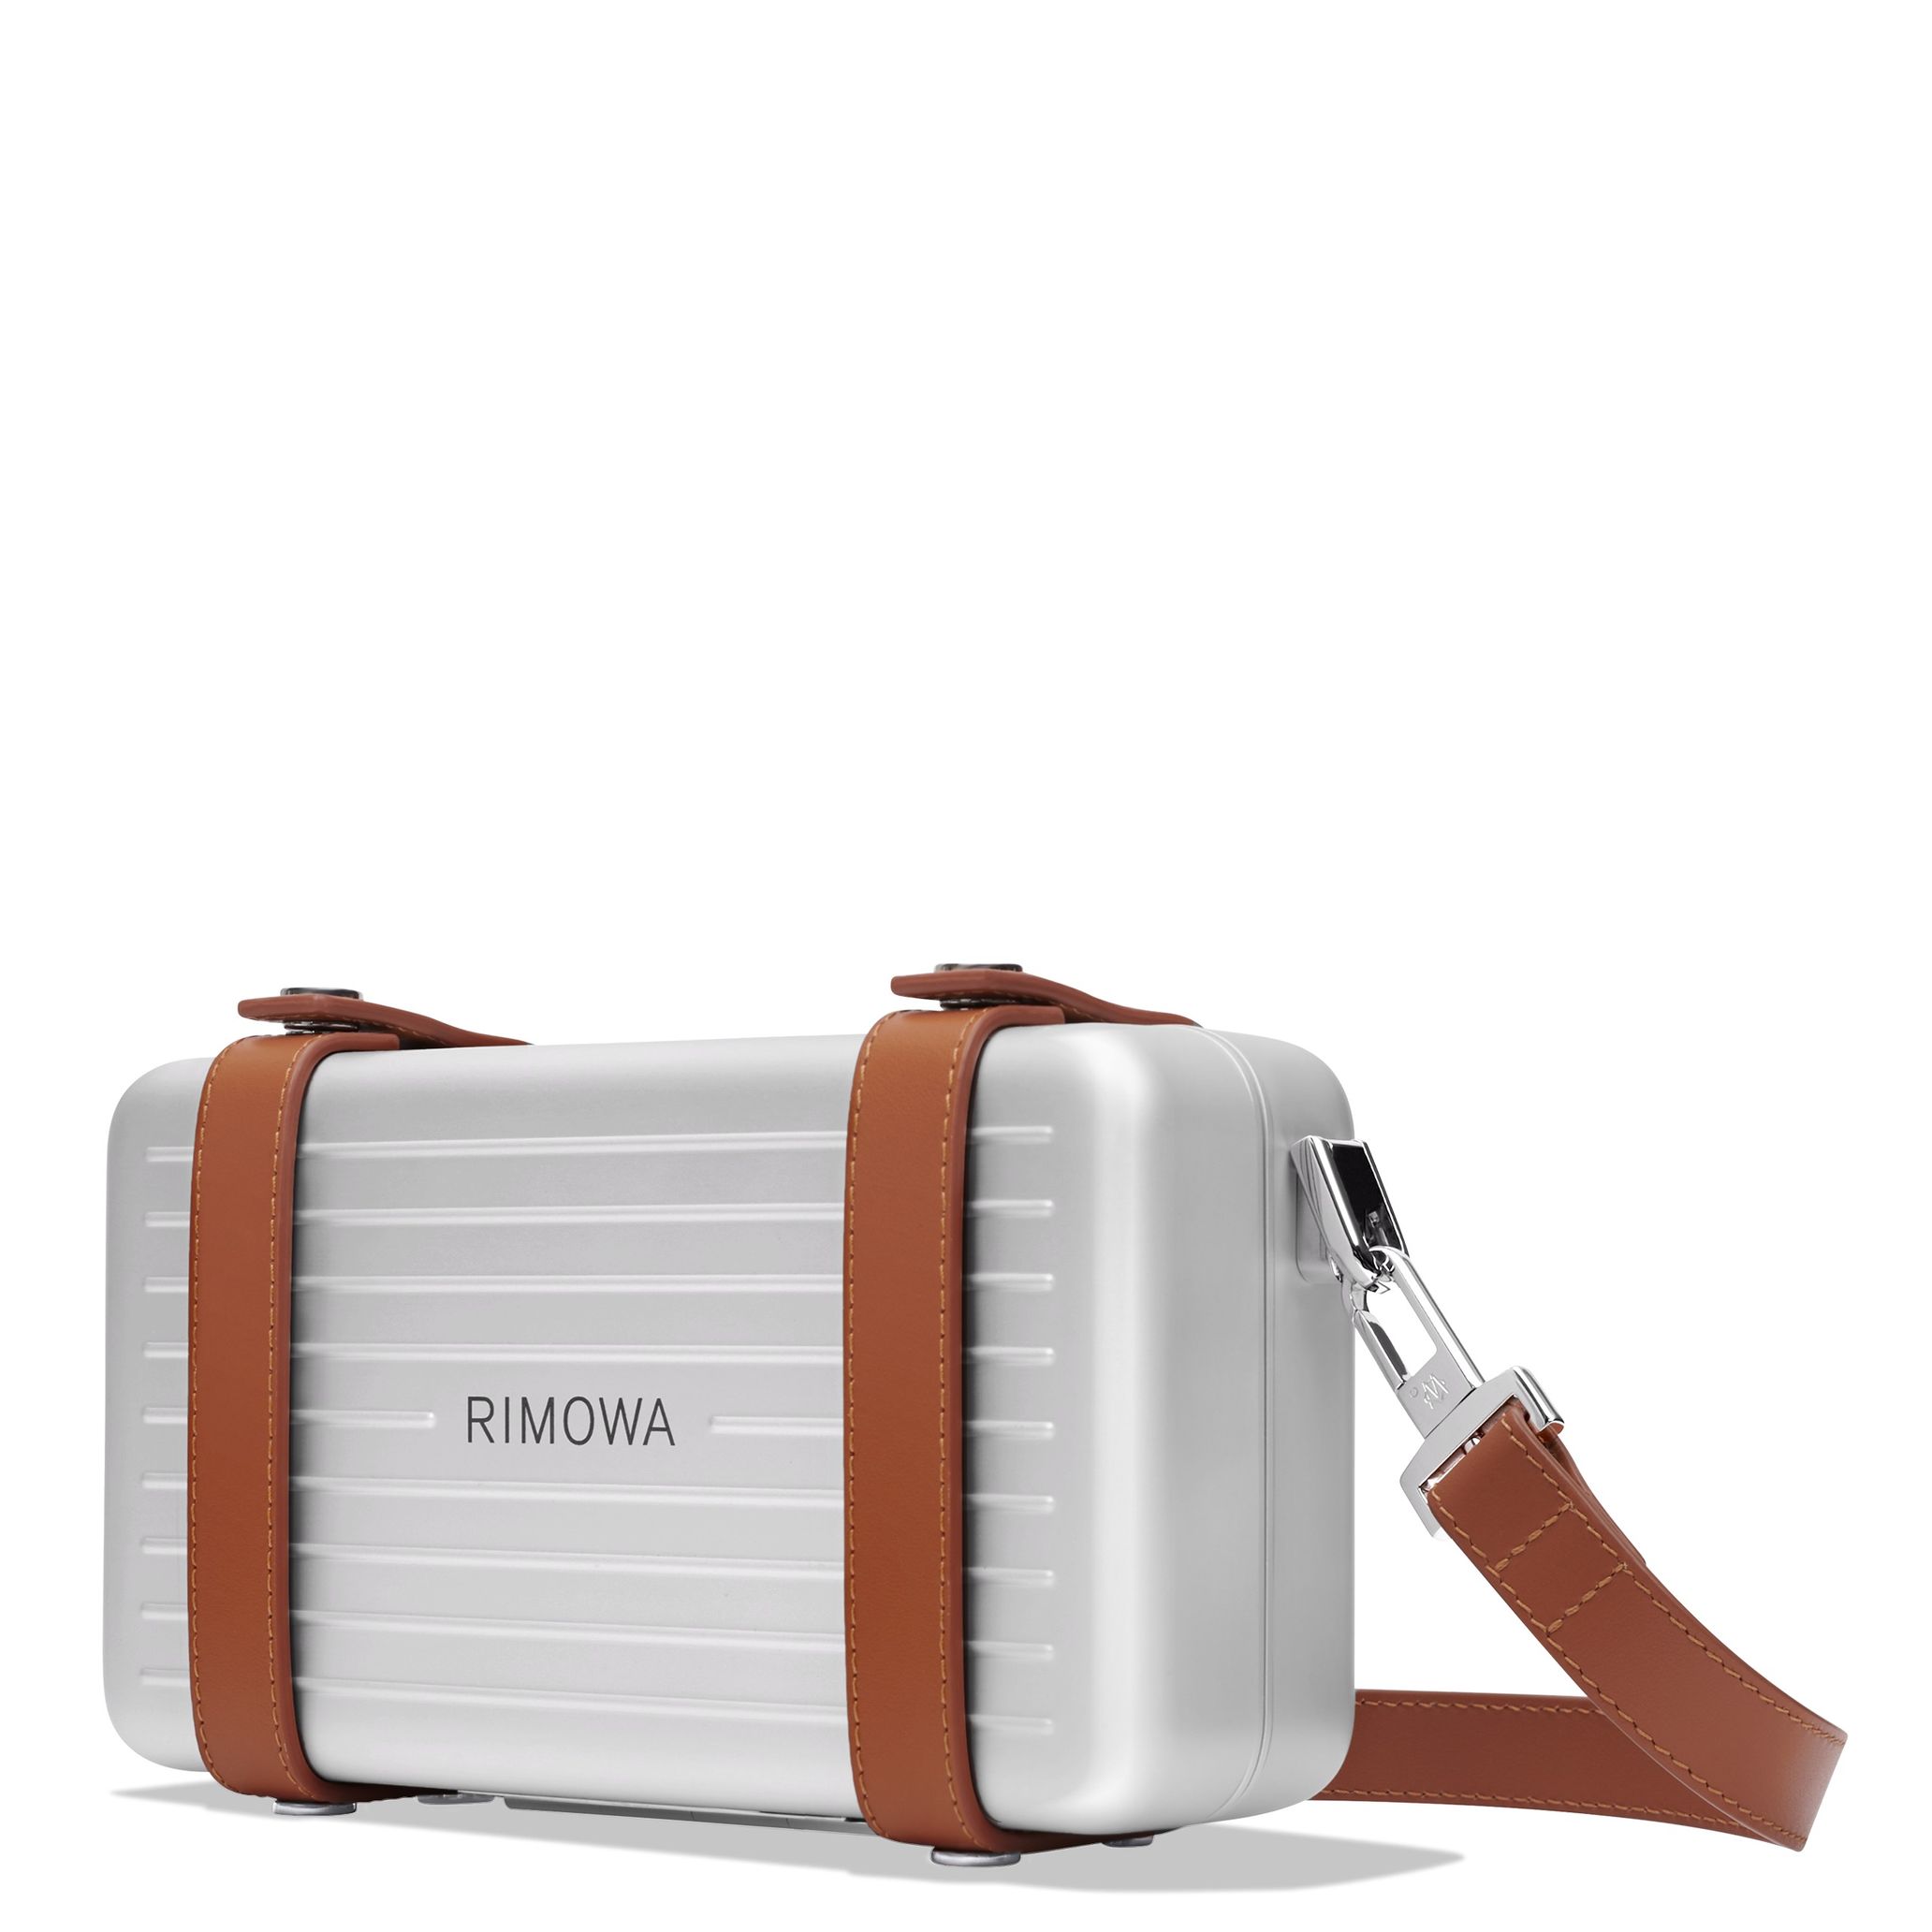 リモワ」が人気のアルミ製小型バッグの新作を発売 - TOKION